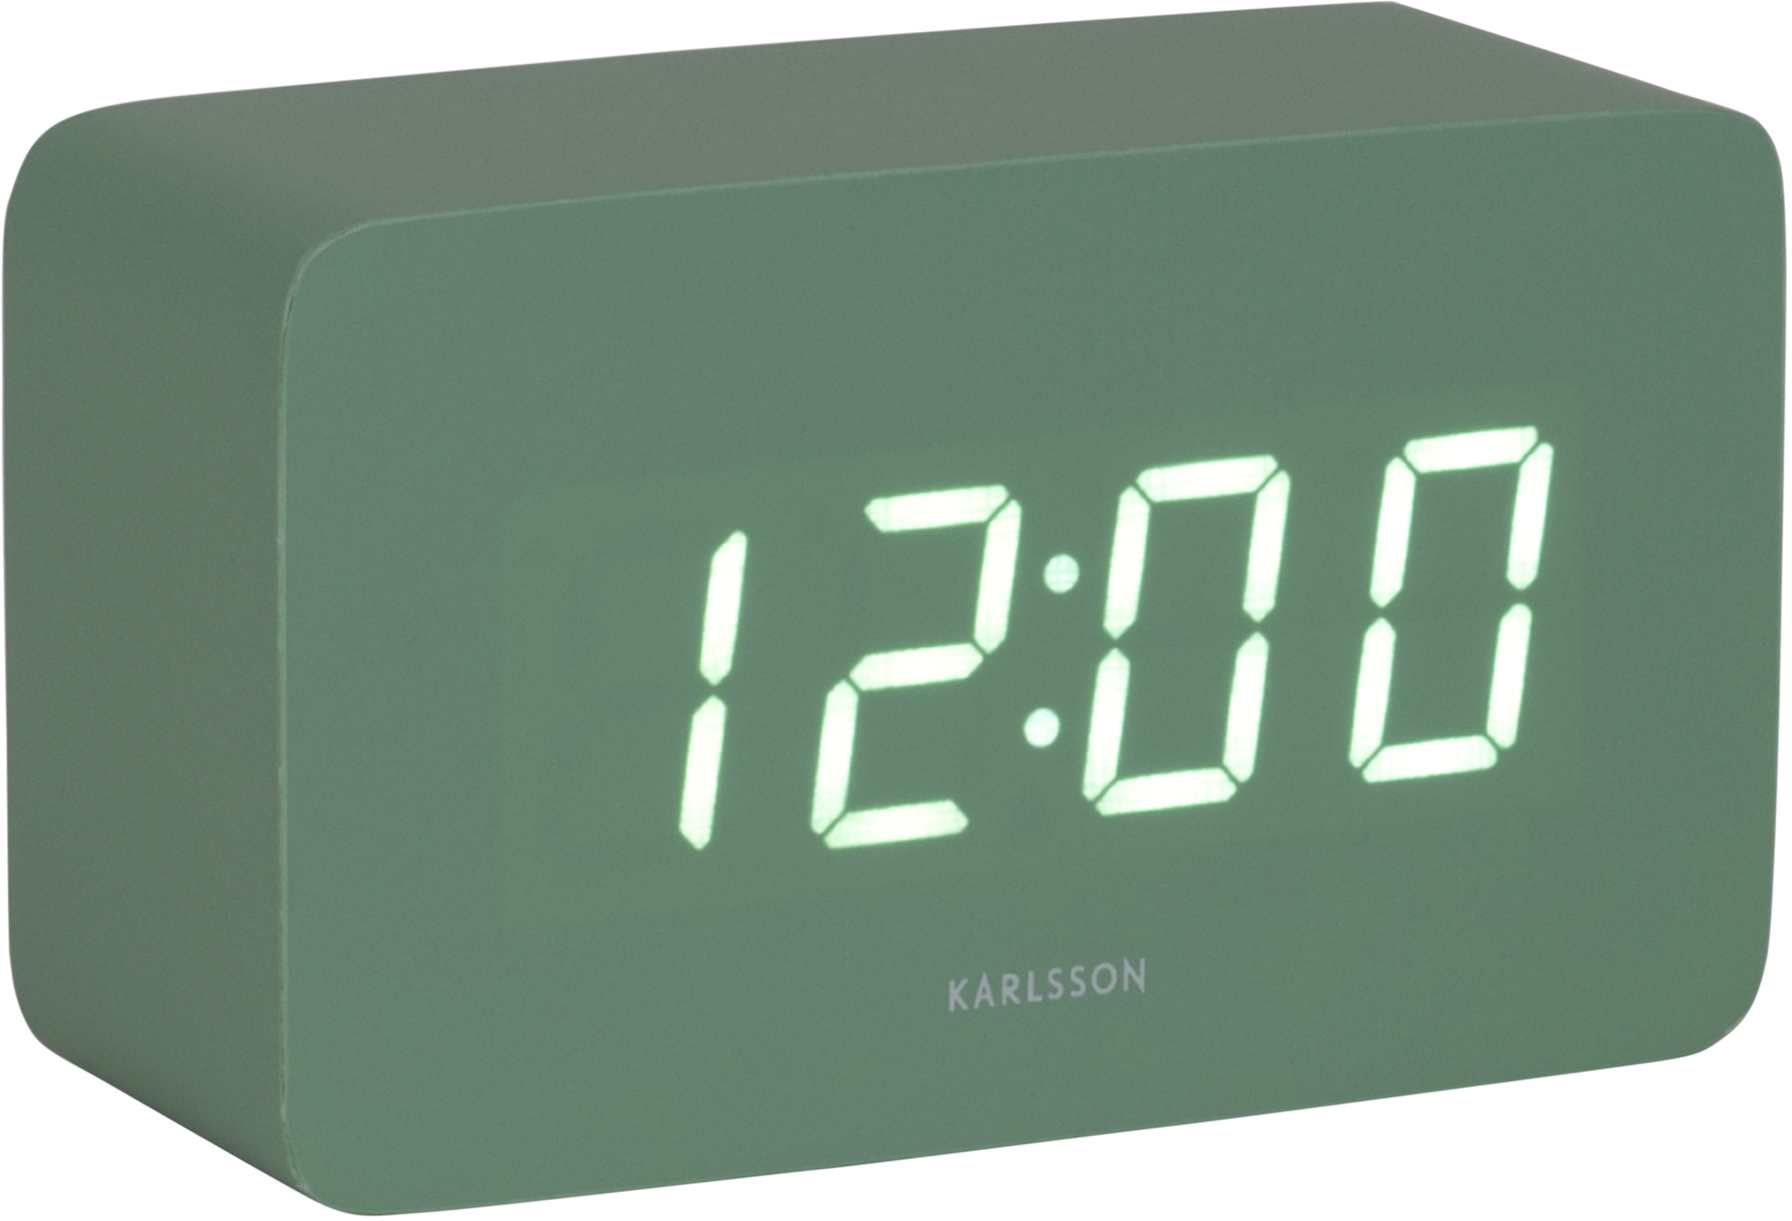 Karlsson Designové LED hodiny s budíkem KA5983GR